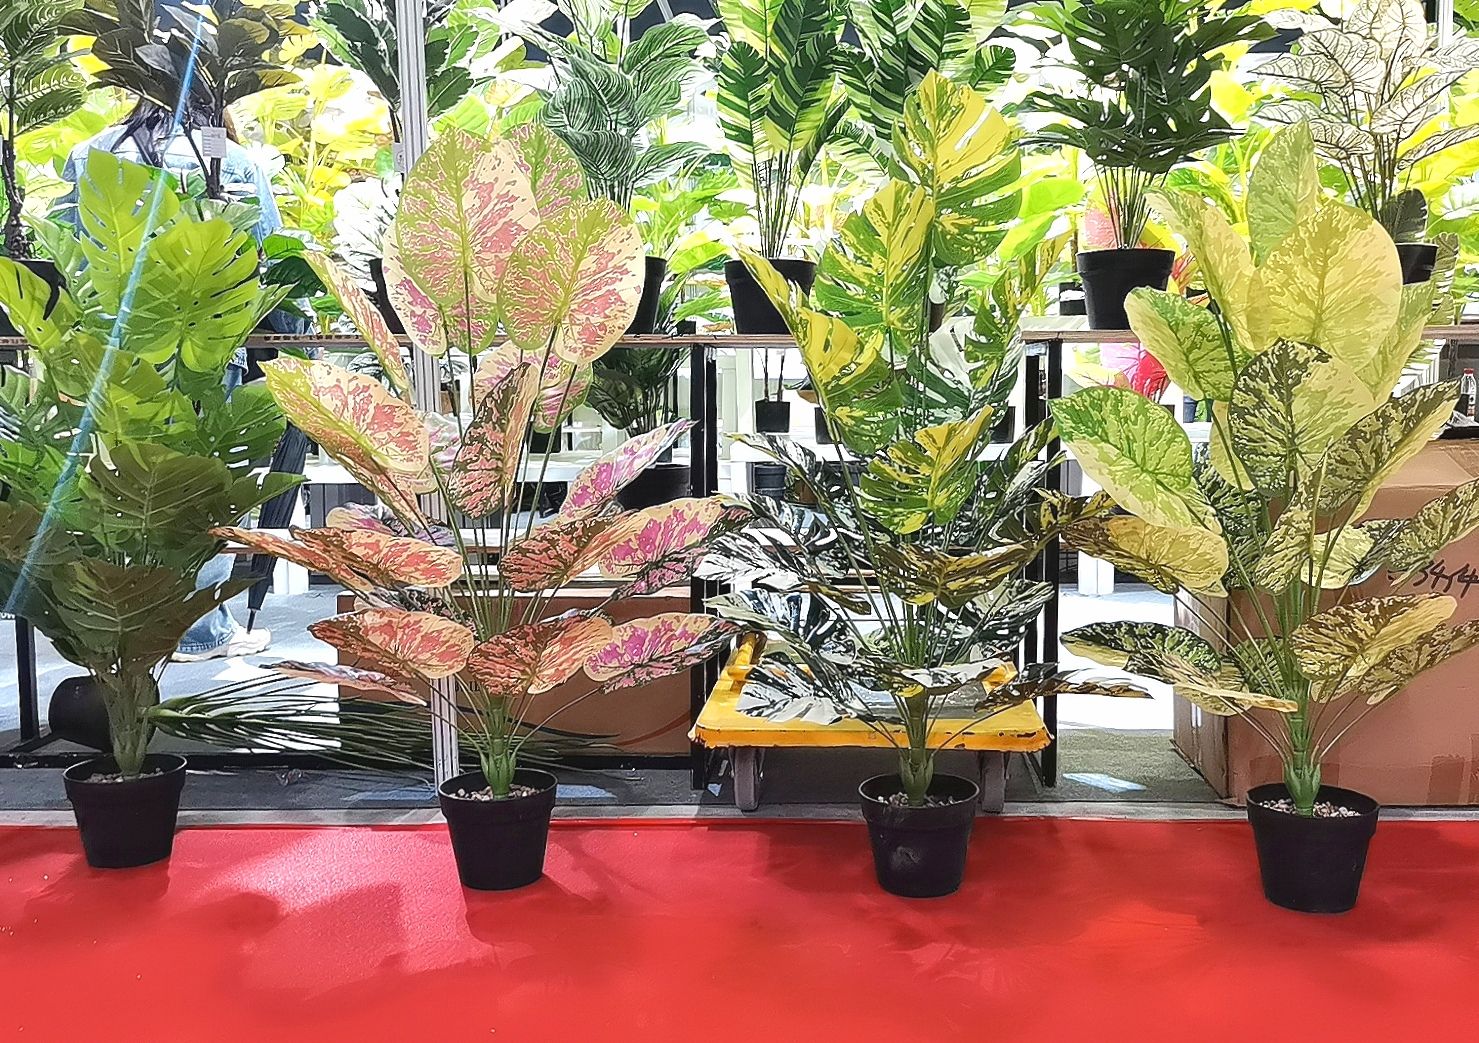 COTV全球直播-广东省汕头市德艺仿真植物厂专业设计生产各种仿真花、仿植物等产品，款式多样，欢迎大家光临！